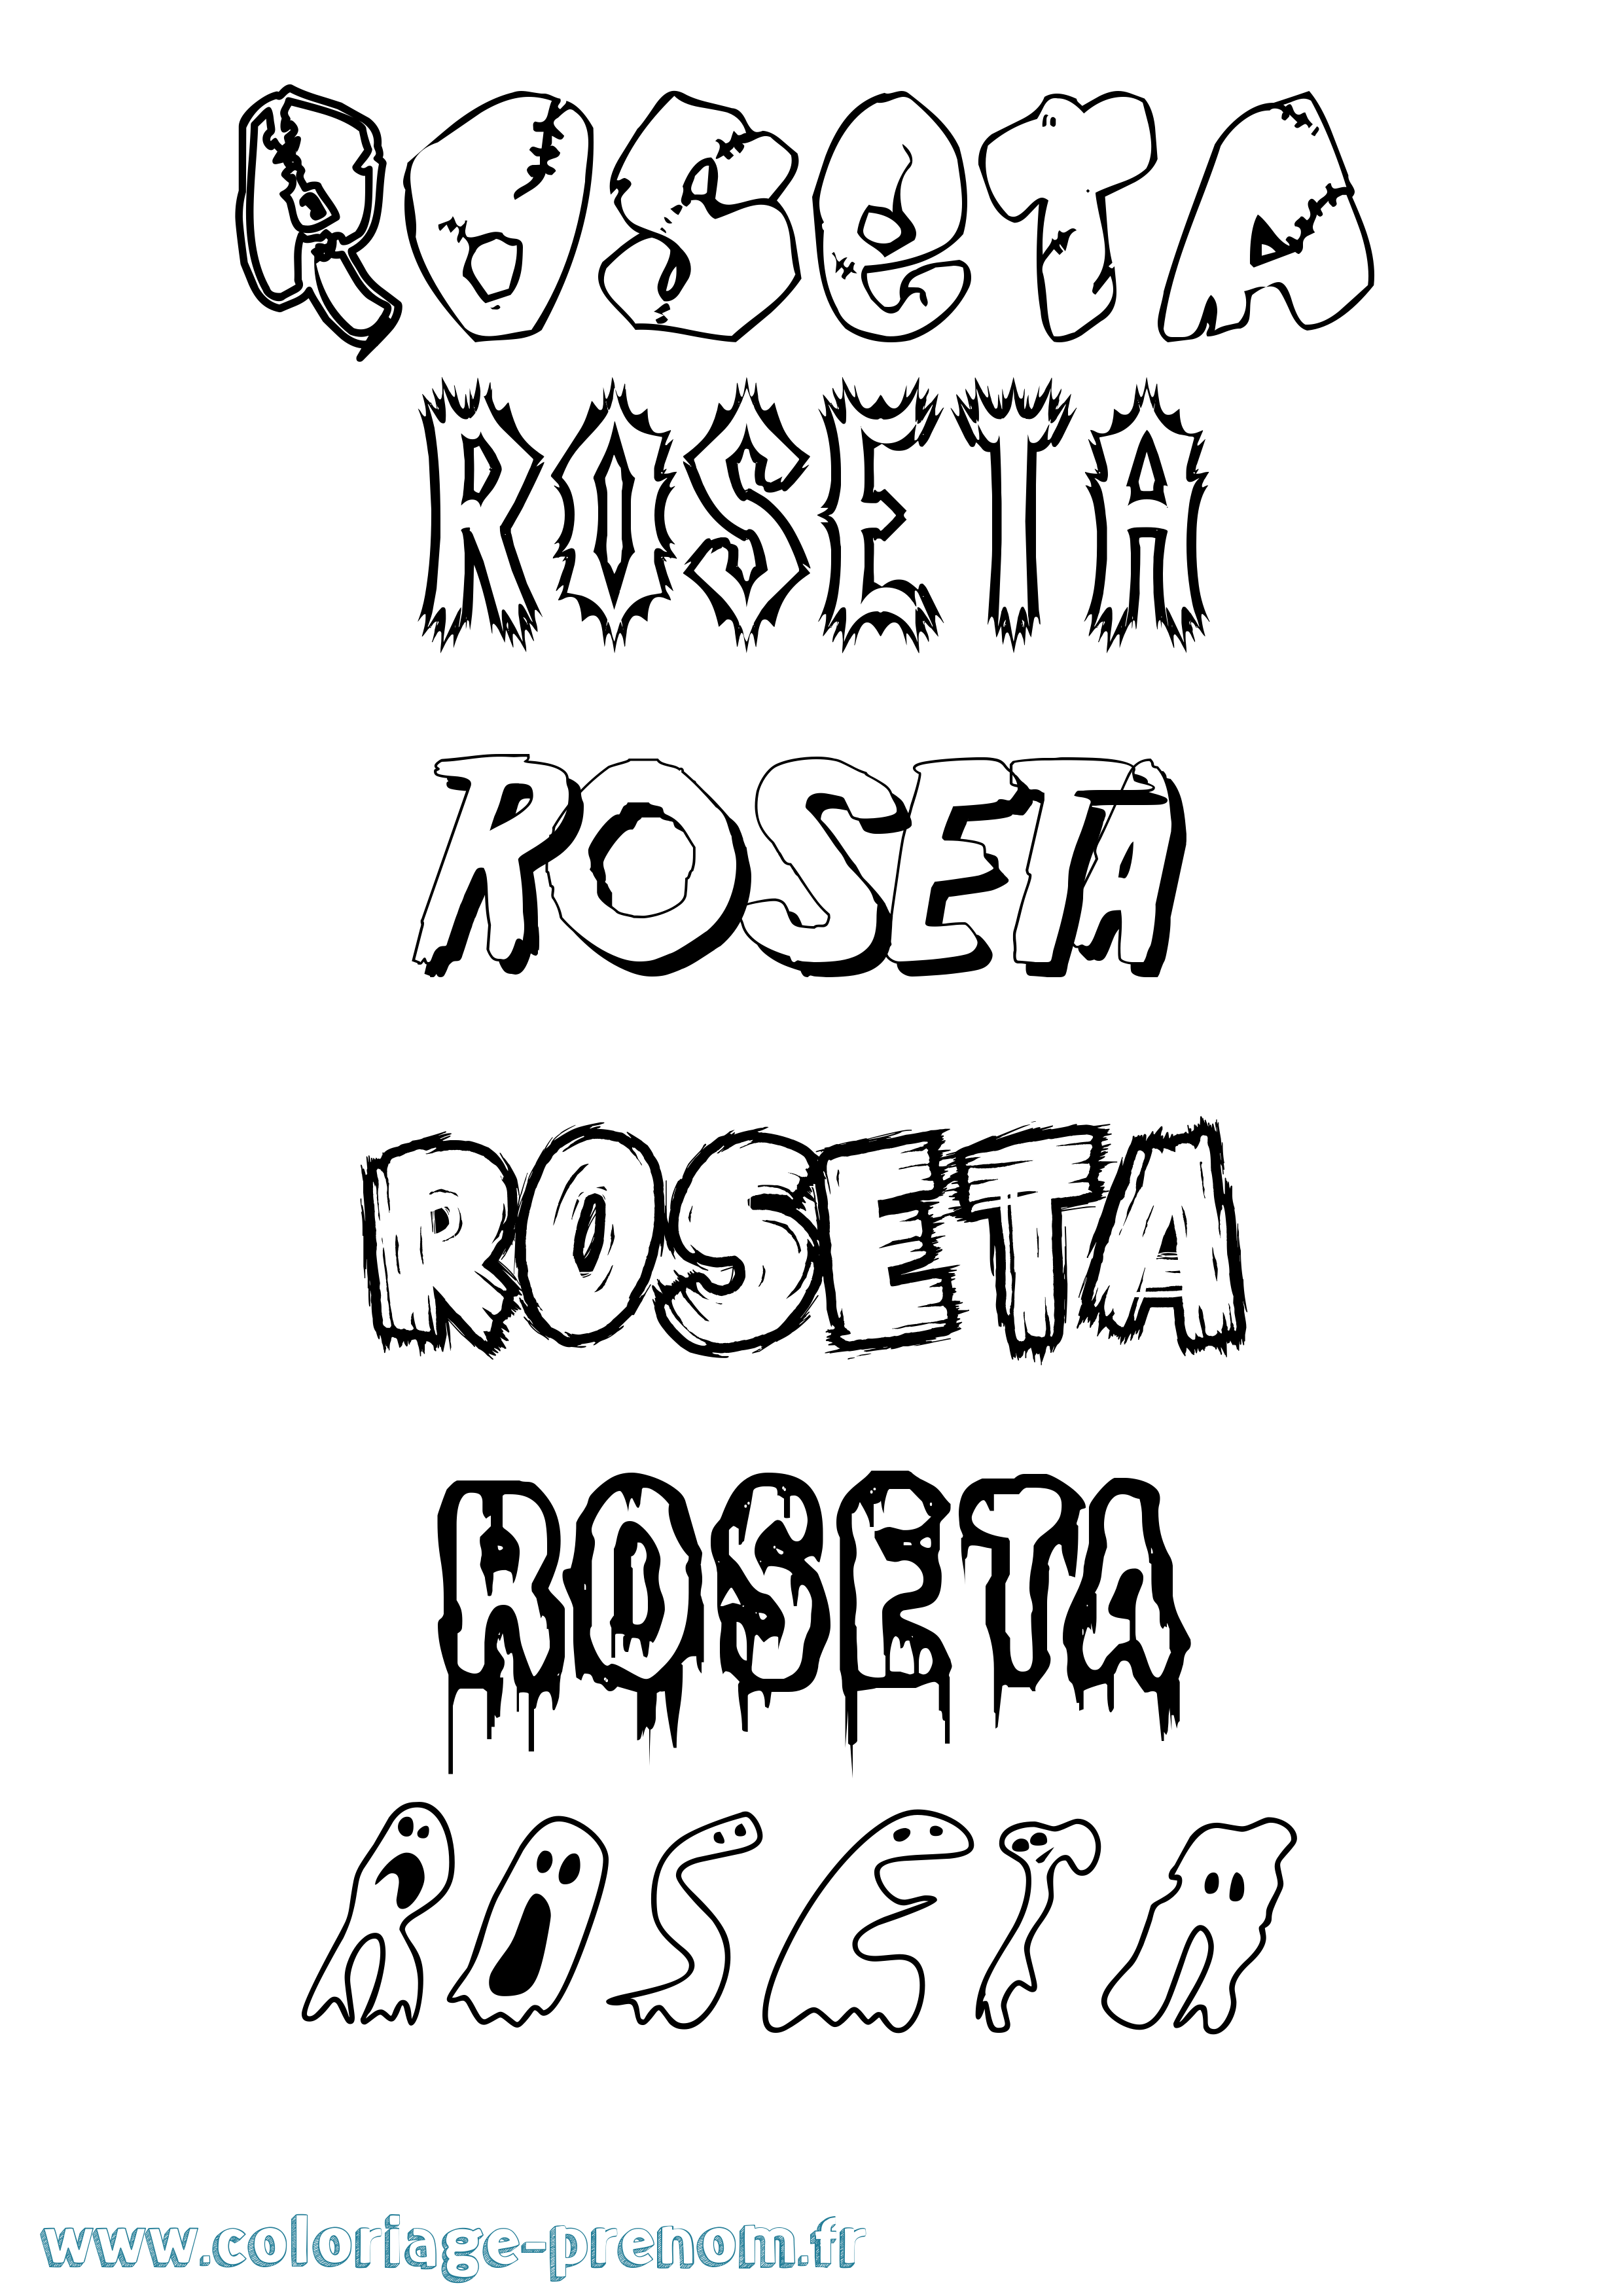 Coloriage prénom Roseta Frisson